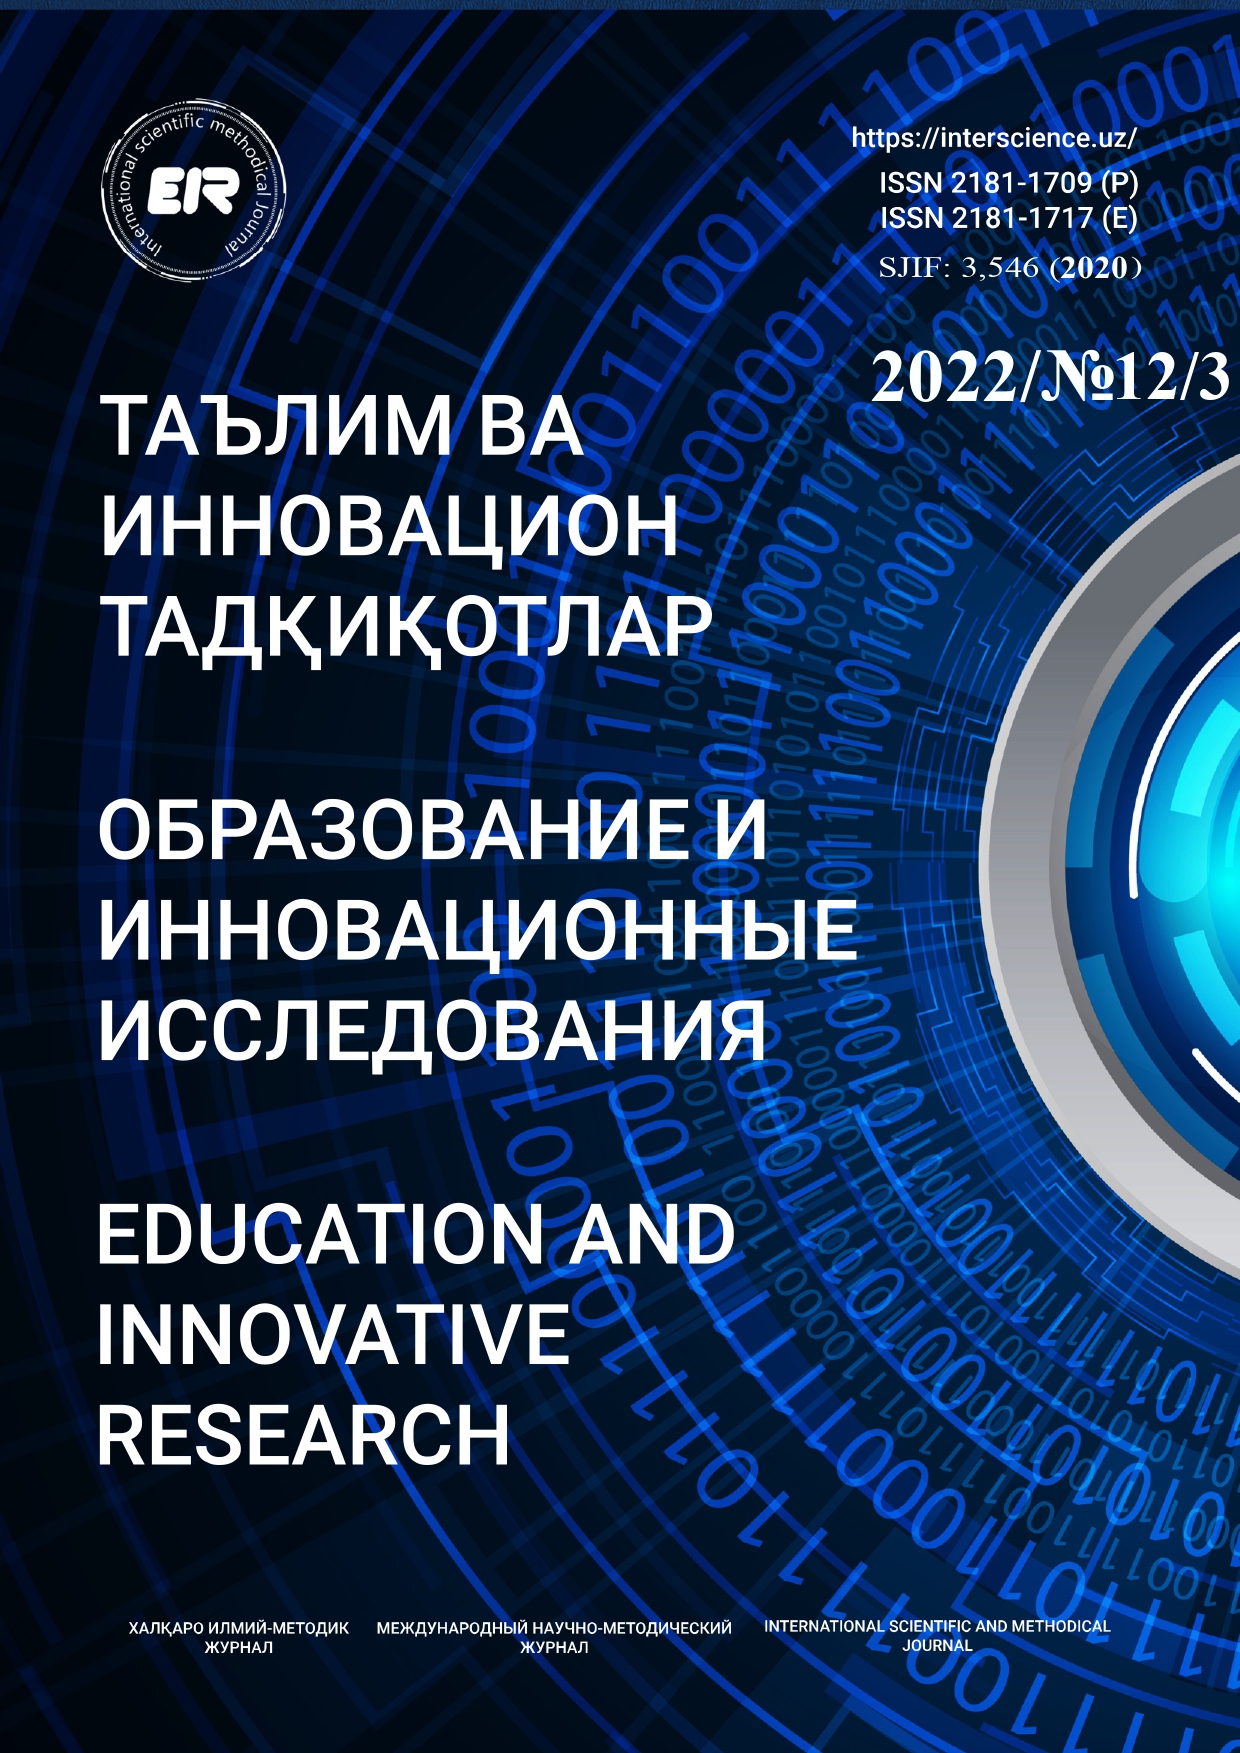 					Показать № 12.3 (2022): Образование и инновационные исследования
				